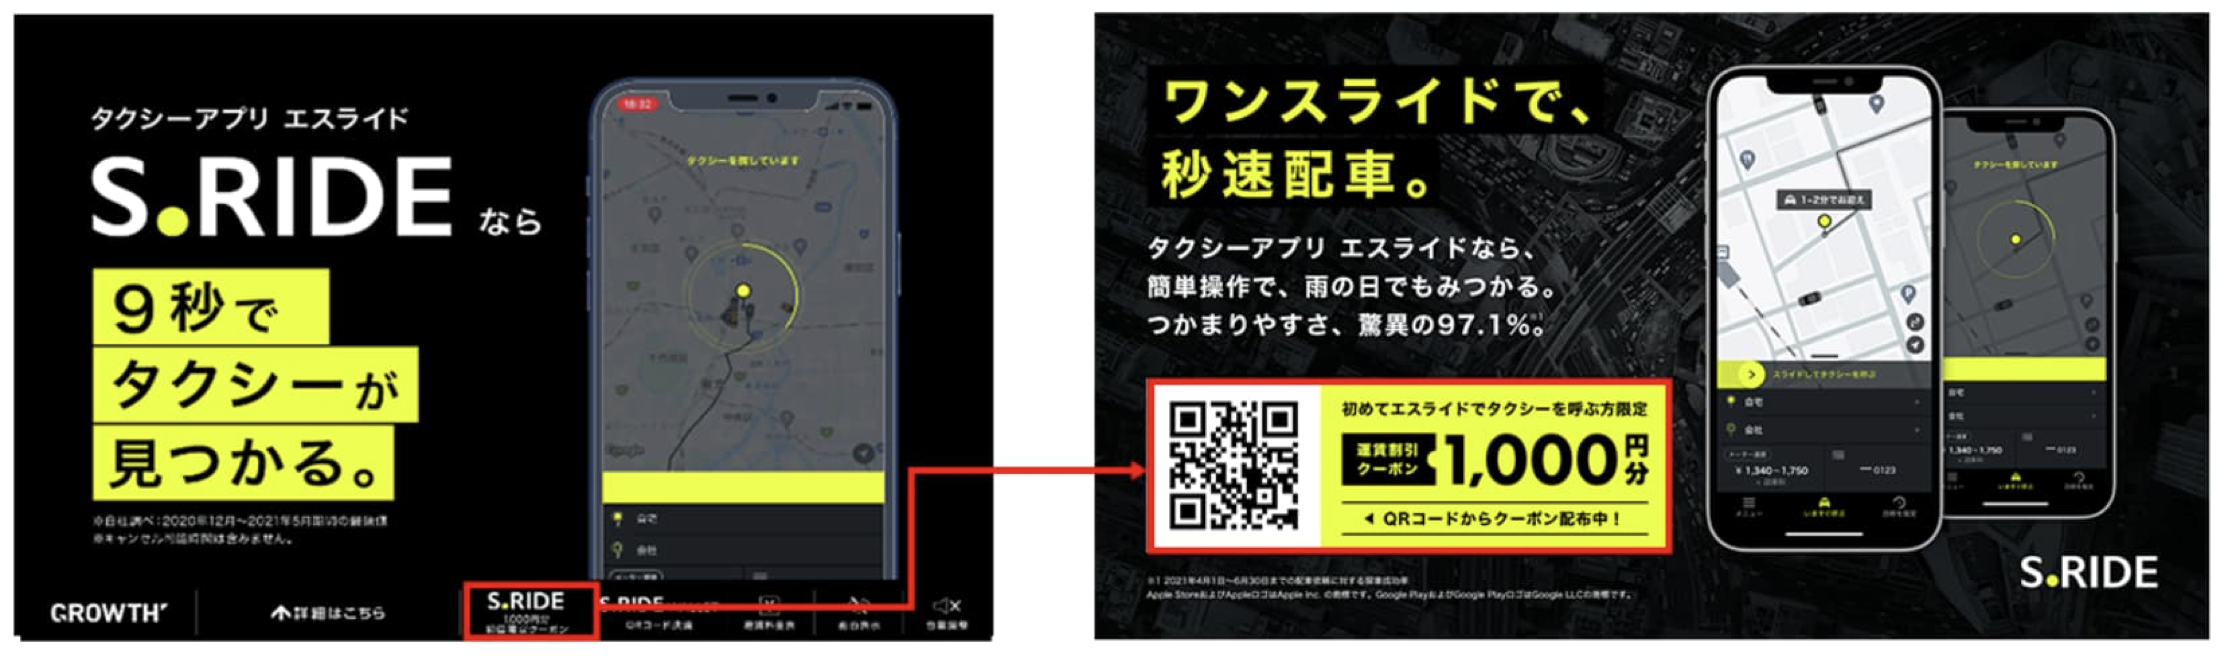 大阪で使えるタクシーアプリとクーポン情報